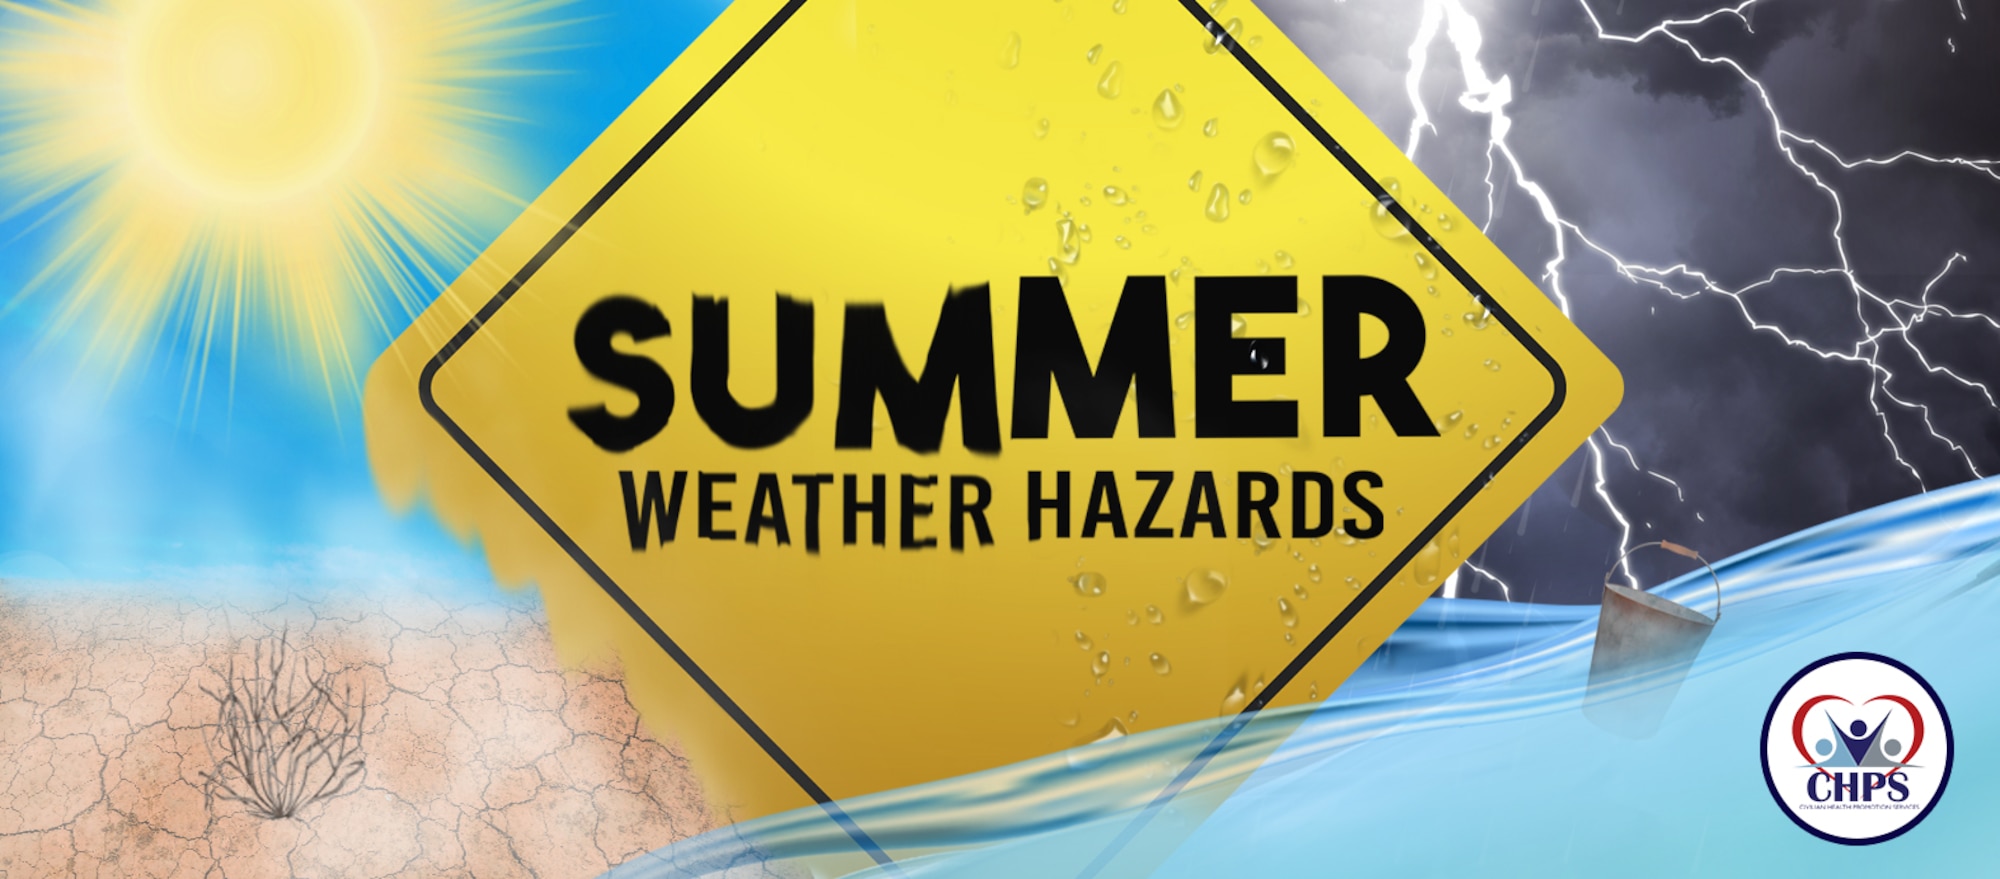 Summer weather hazards graphic